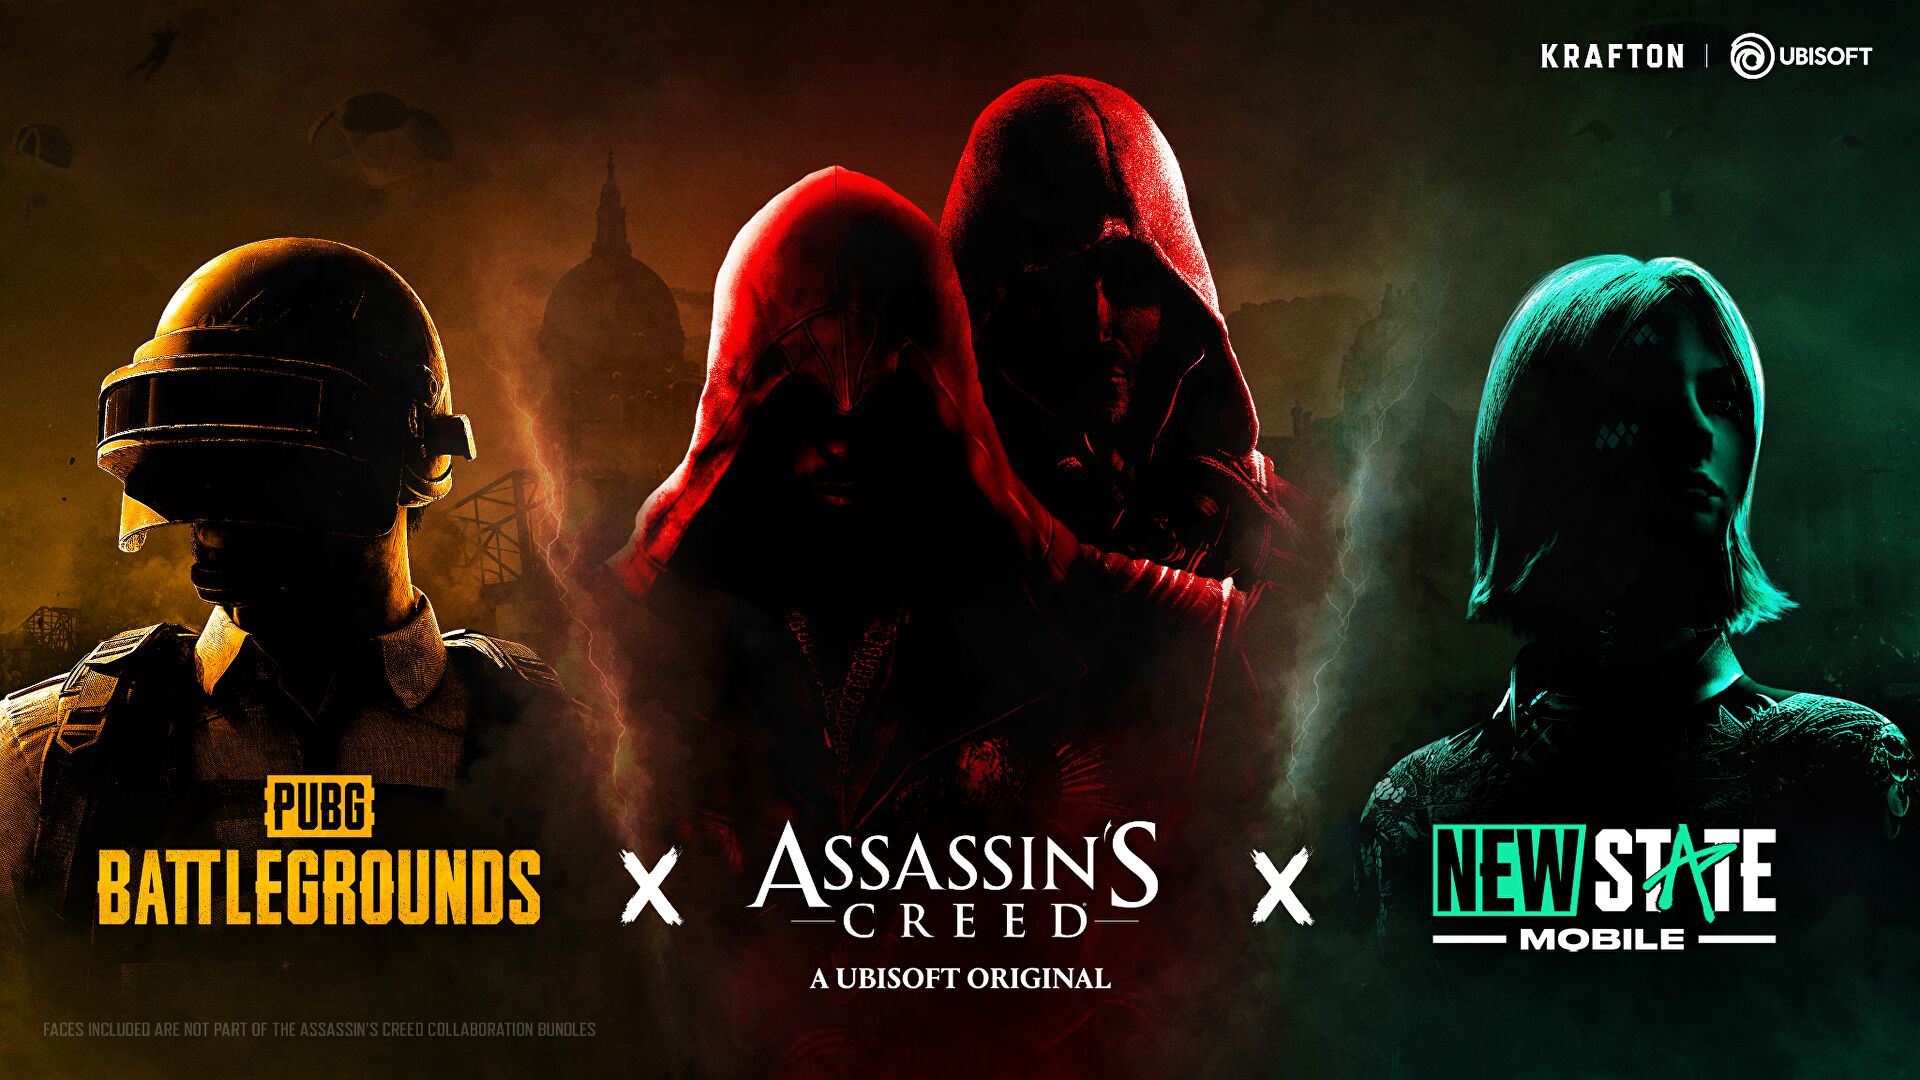 Obrazki dla Assassin's Creed wkrótce w PUBG. Szykuje się nietypowy crossover